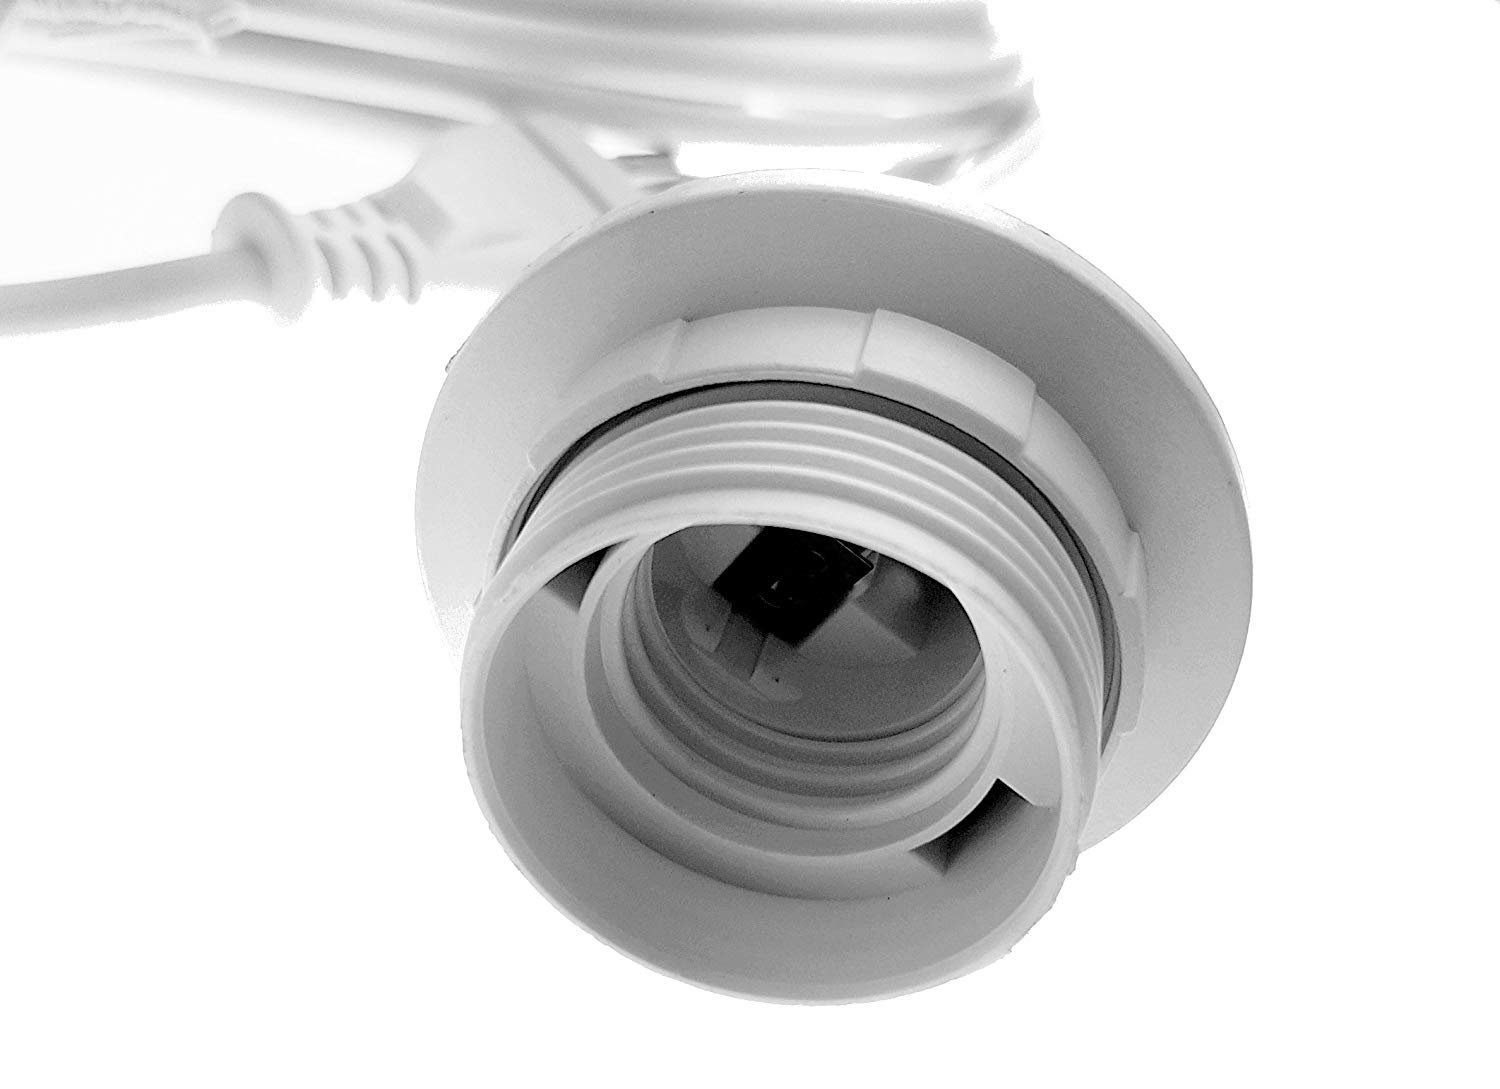 TRANGO LED Pendelleuchte, 3er Pack E27 Schraubring Schalter, weiß Hängeleuchte Lampenaufhängung ON/OFF Netzkabel Lampenfassung Pendelleuchte I I I I Schalter mit mit - 1011-350W 3,5m Fassung